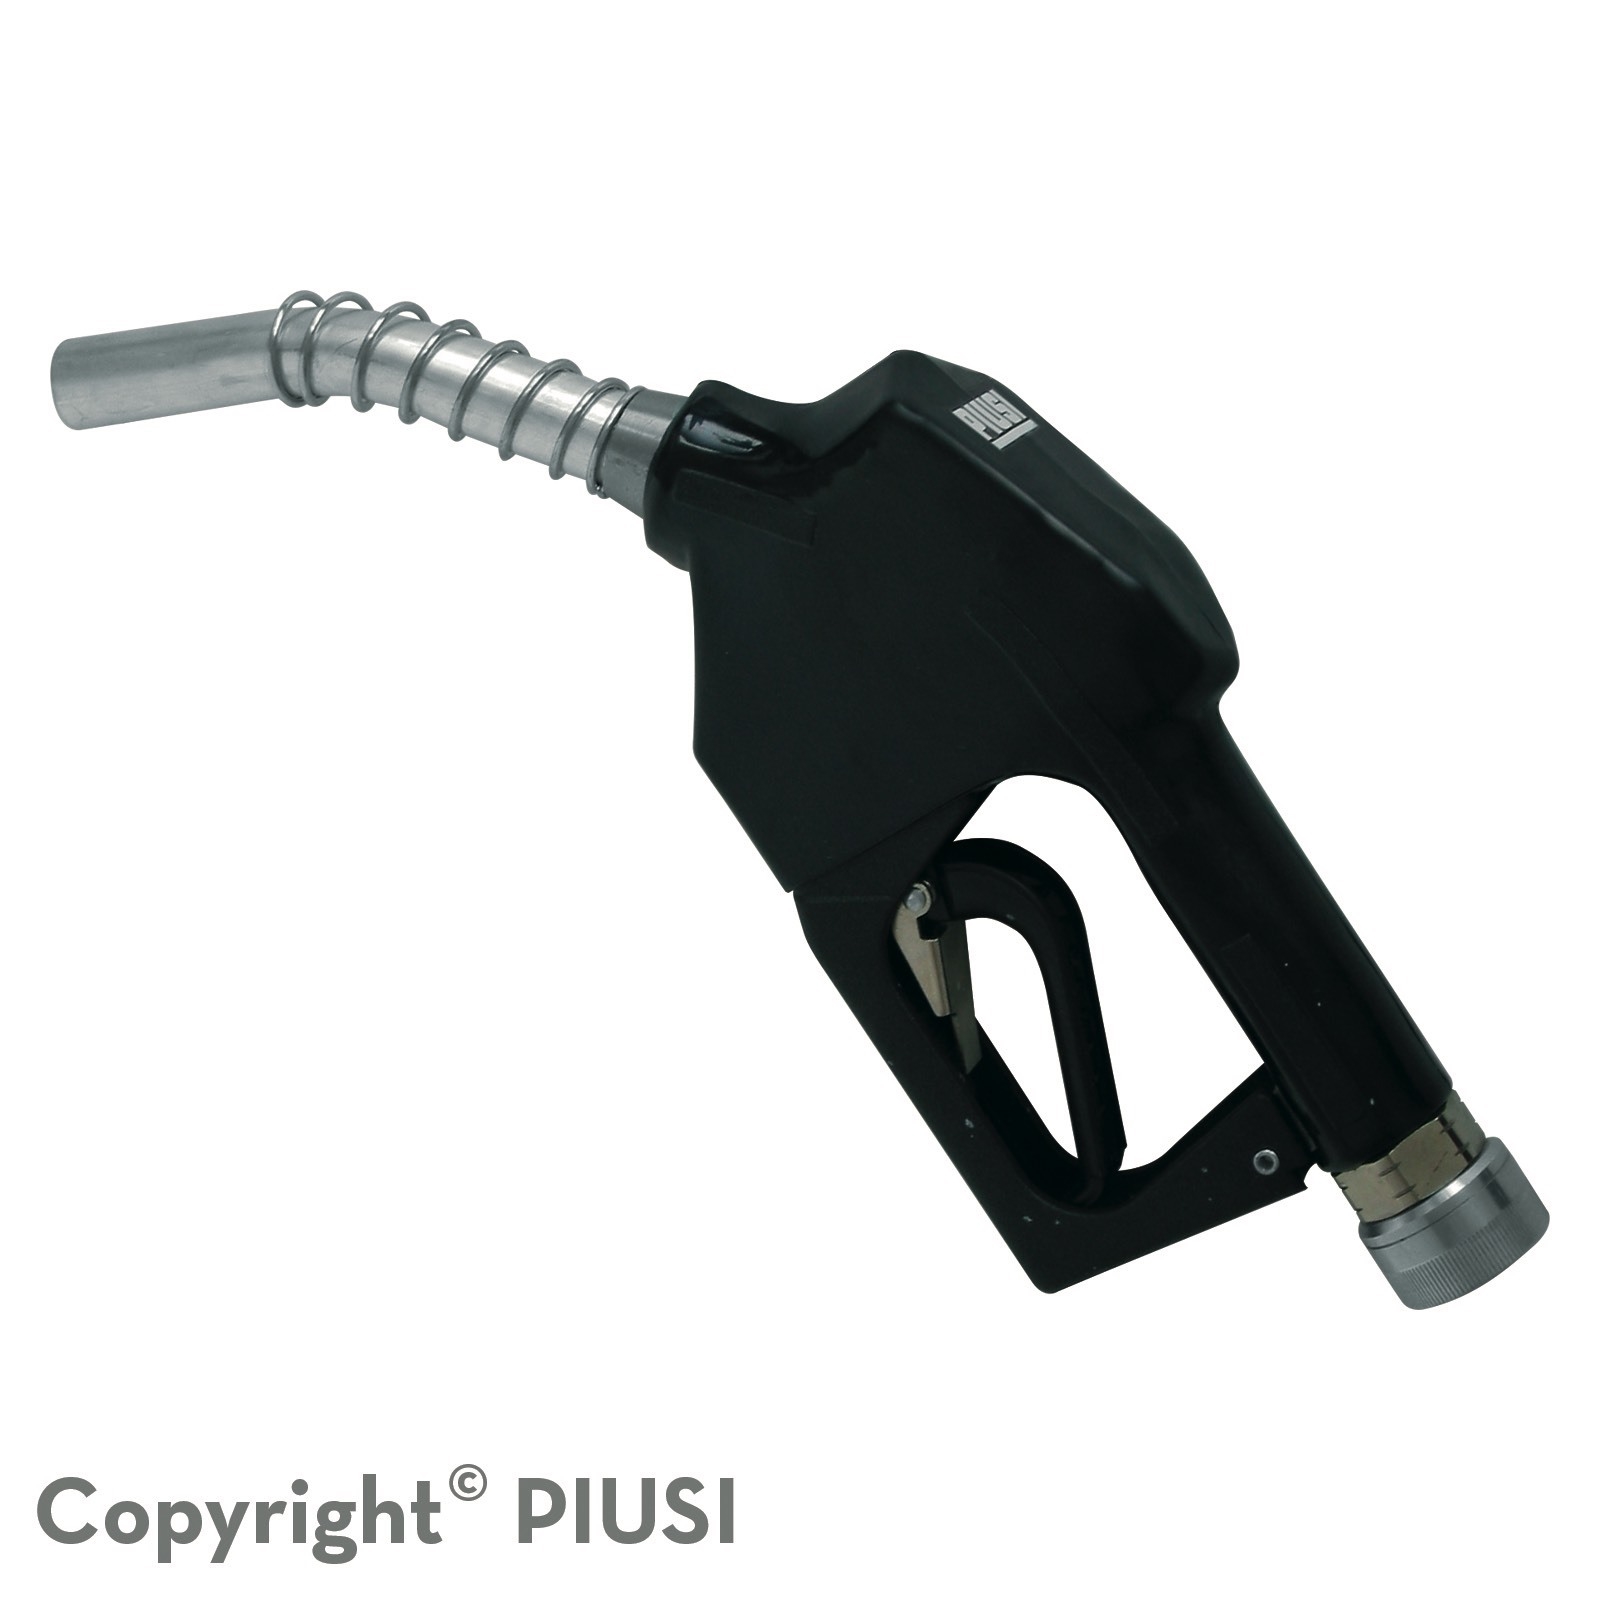 Cò cấp xăng dầu tự động Piusi A60 Atex